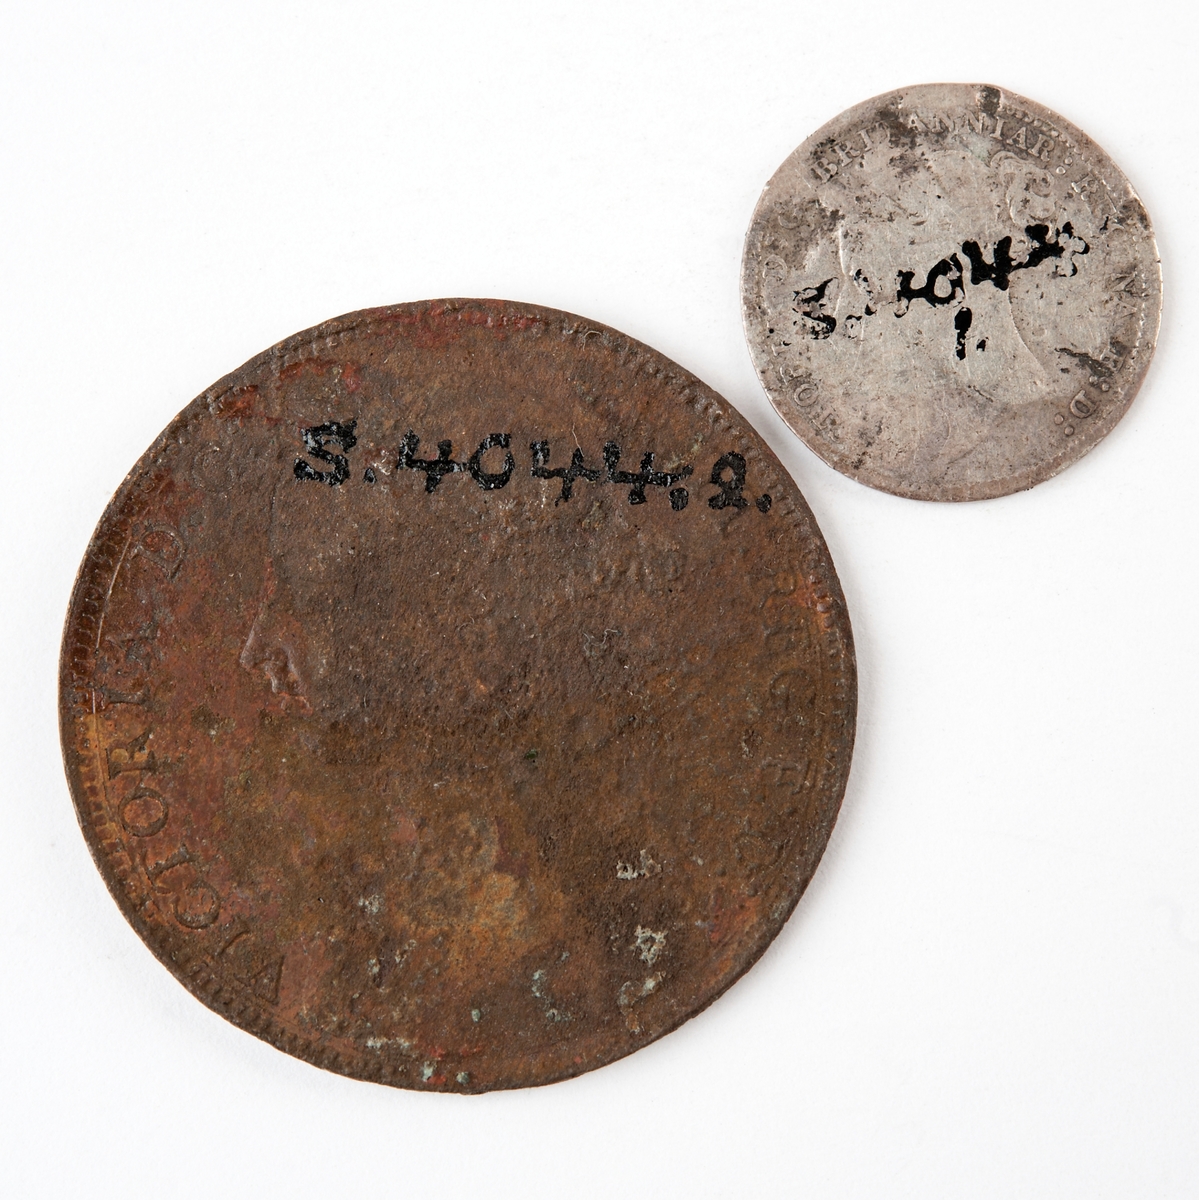 Brittiska mynt präglade 1885 respektive 1888